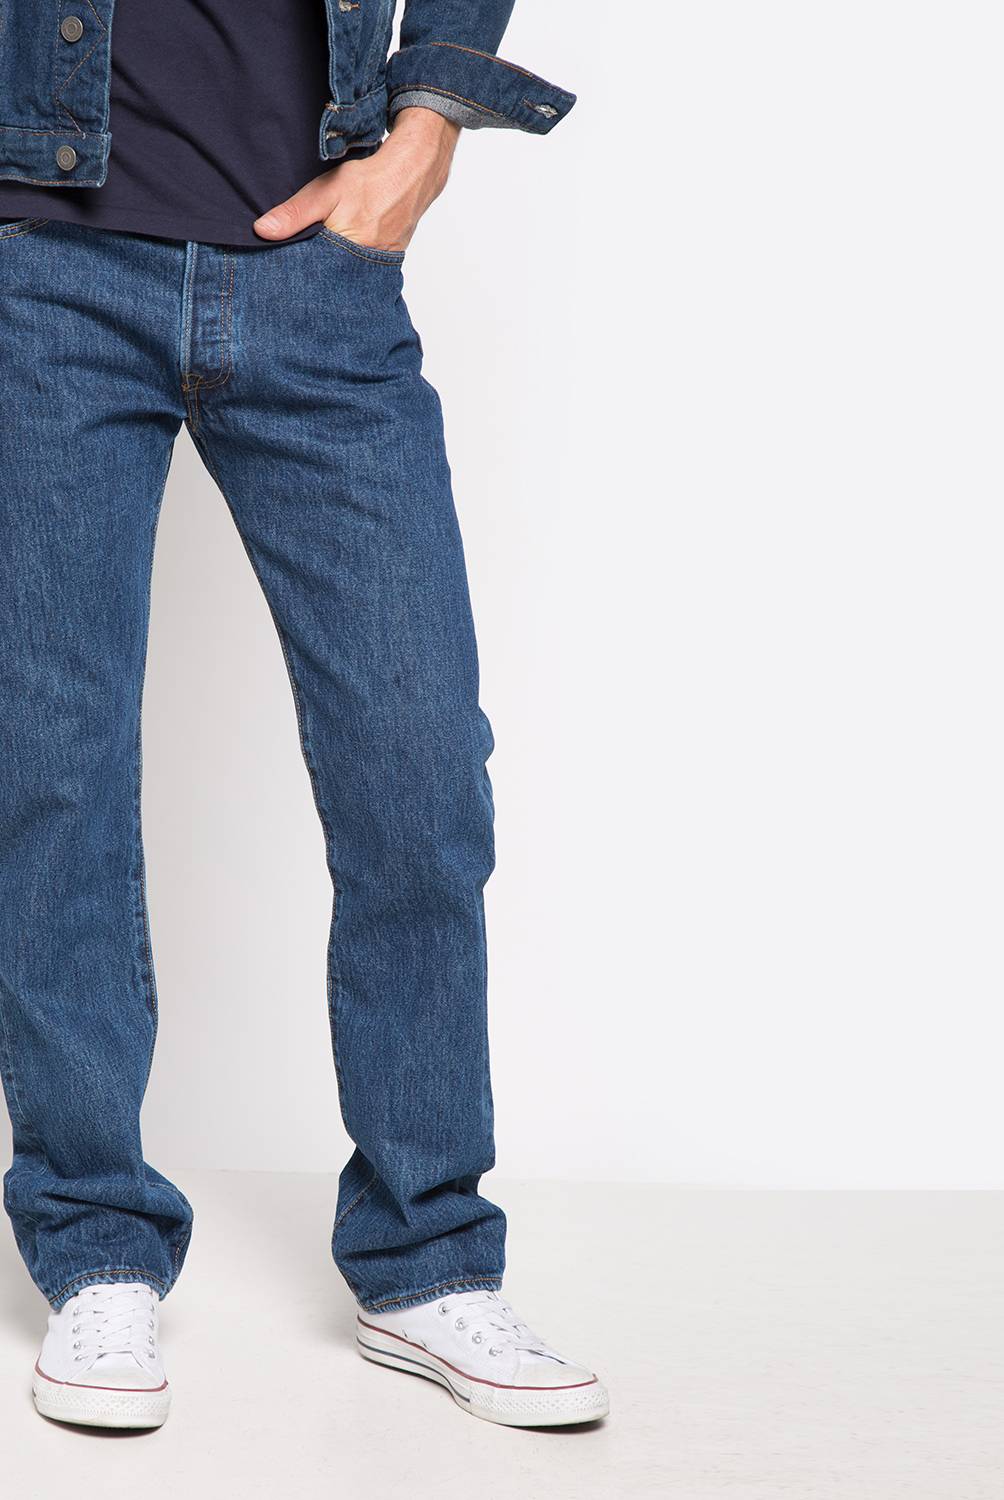 LEVIS - Jeans Regular Fit Algodón Hombre Levis